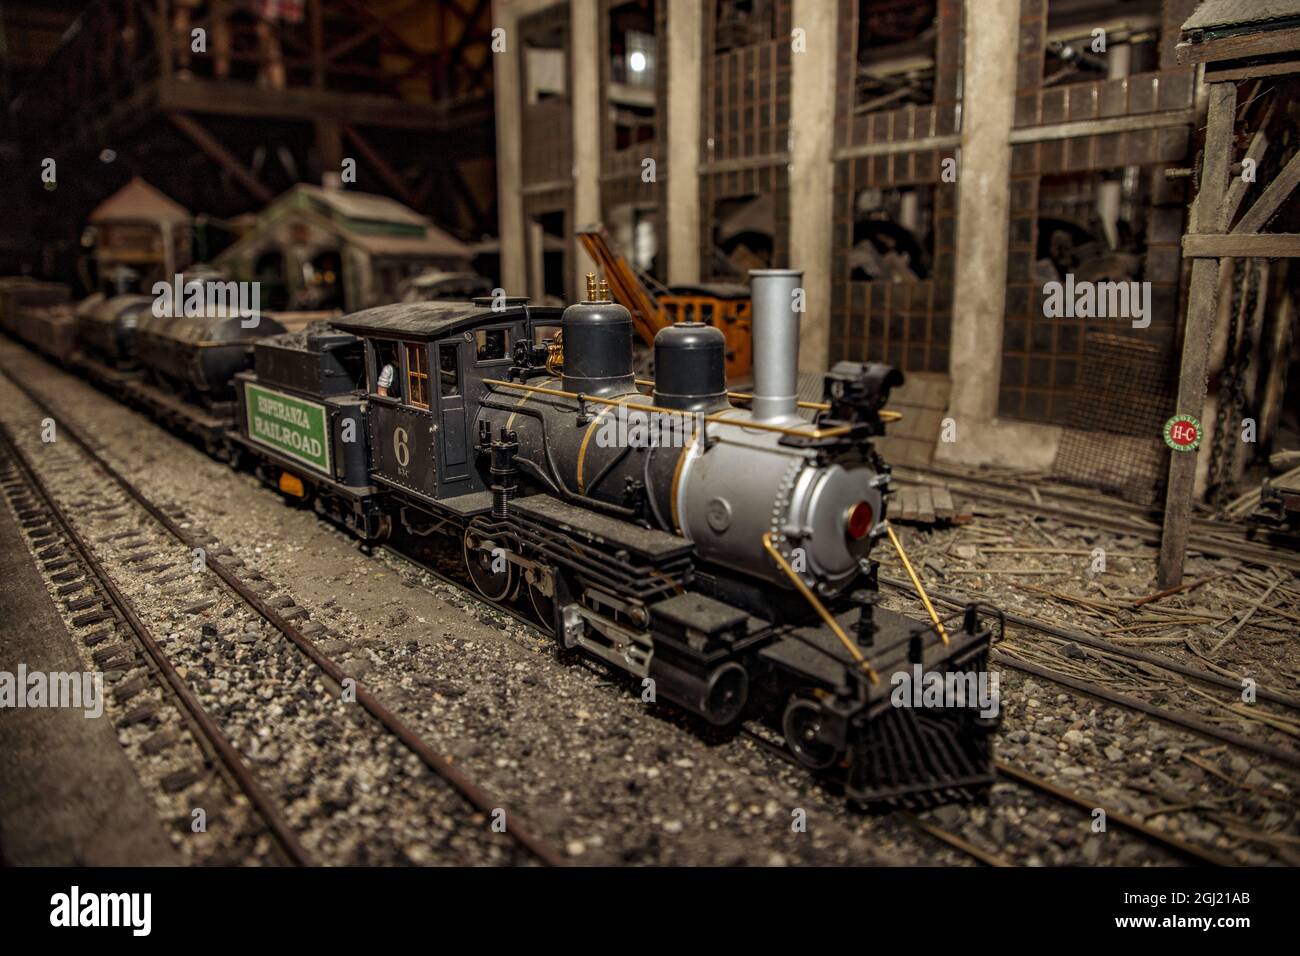 Aufnahme eines Lokomotivmodells, das in den alten Eisenbahnlinien Kubas im Rummuseum in Havanna verwendet wurde Stockfoto